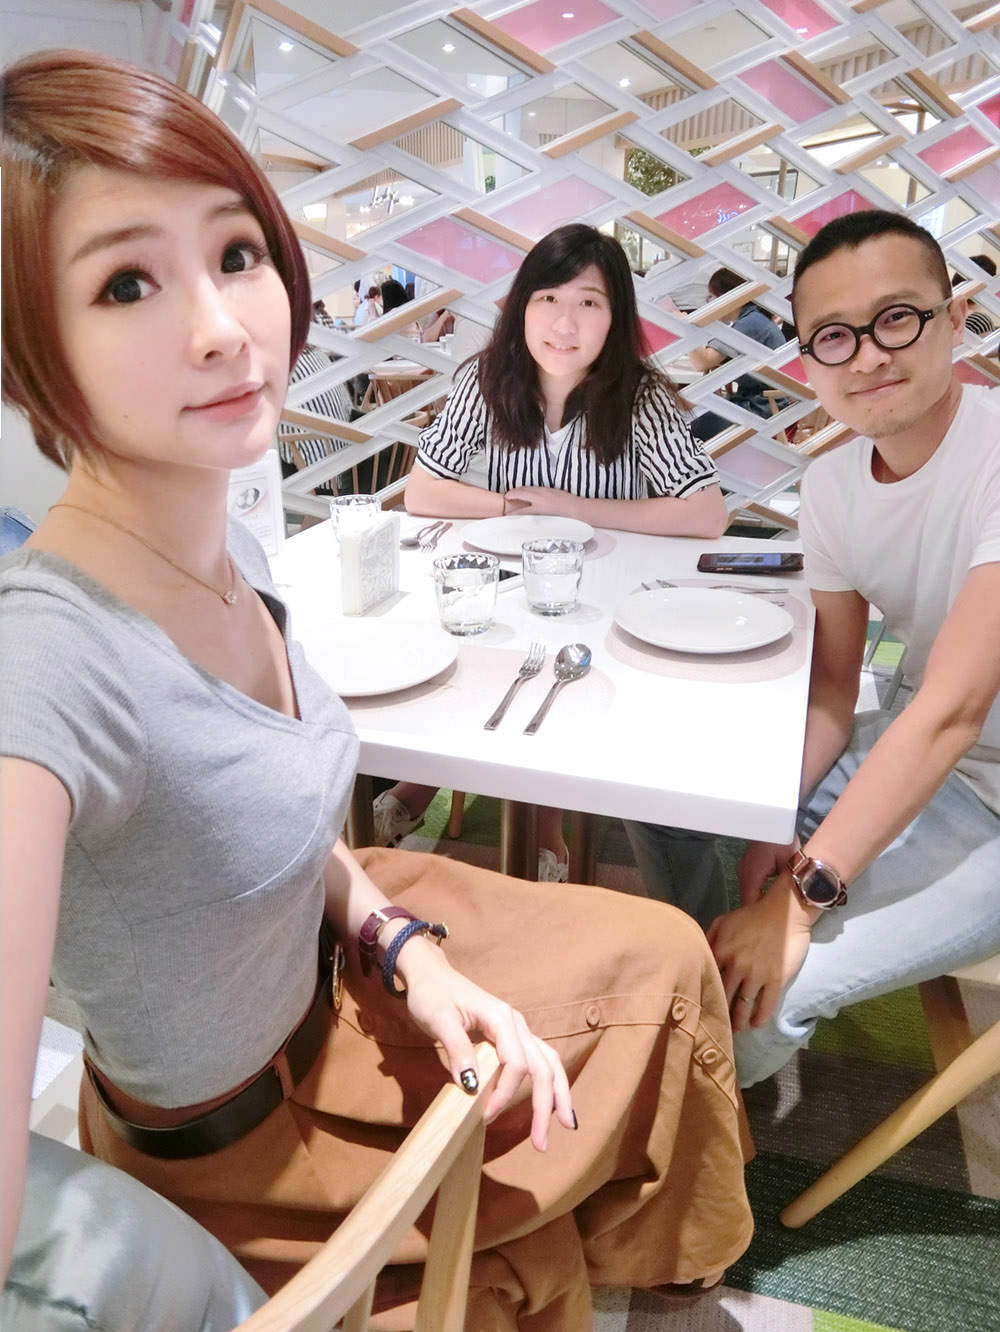 [信義區美食] 泰國曼谷超人氣排隊美食進台灣了!Lady nara 台北統一時代店.好拍又好吃的網美店